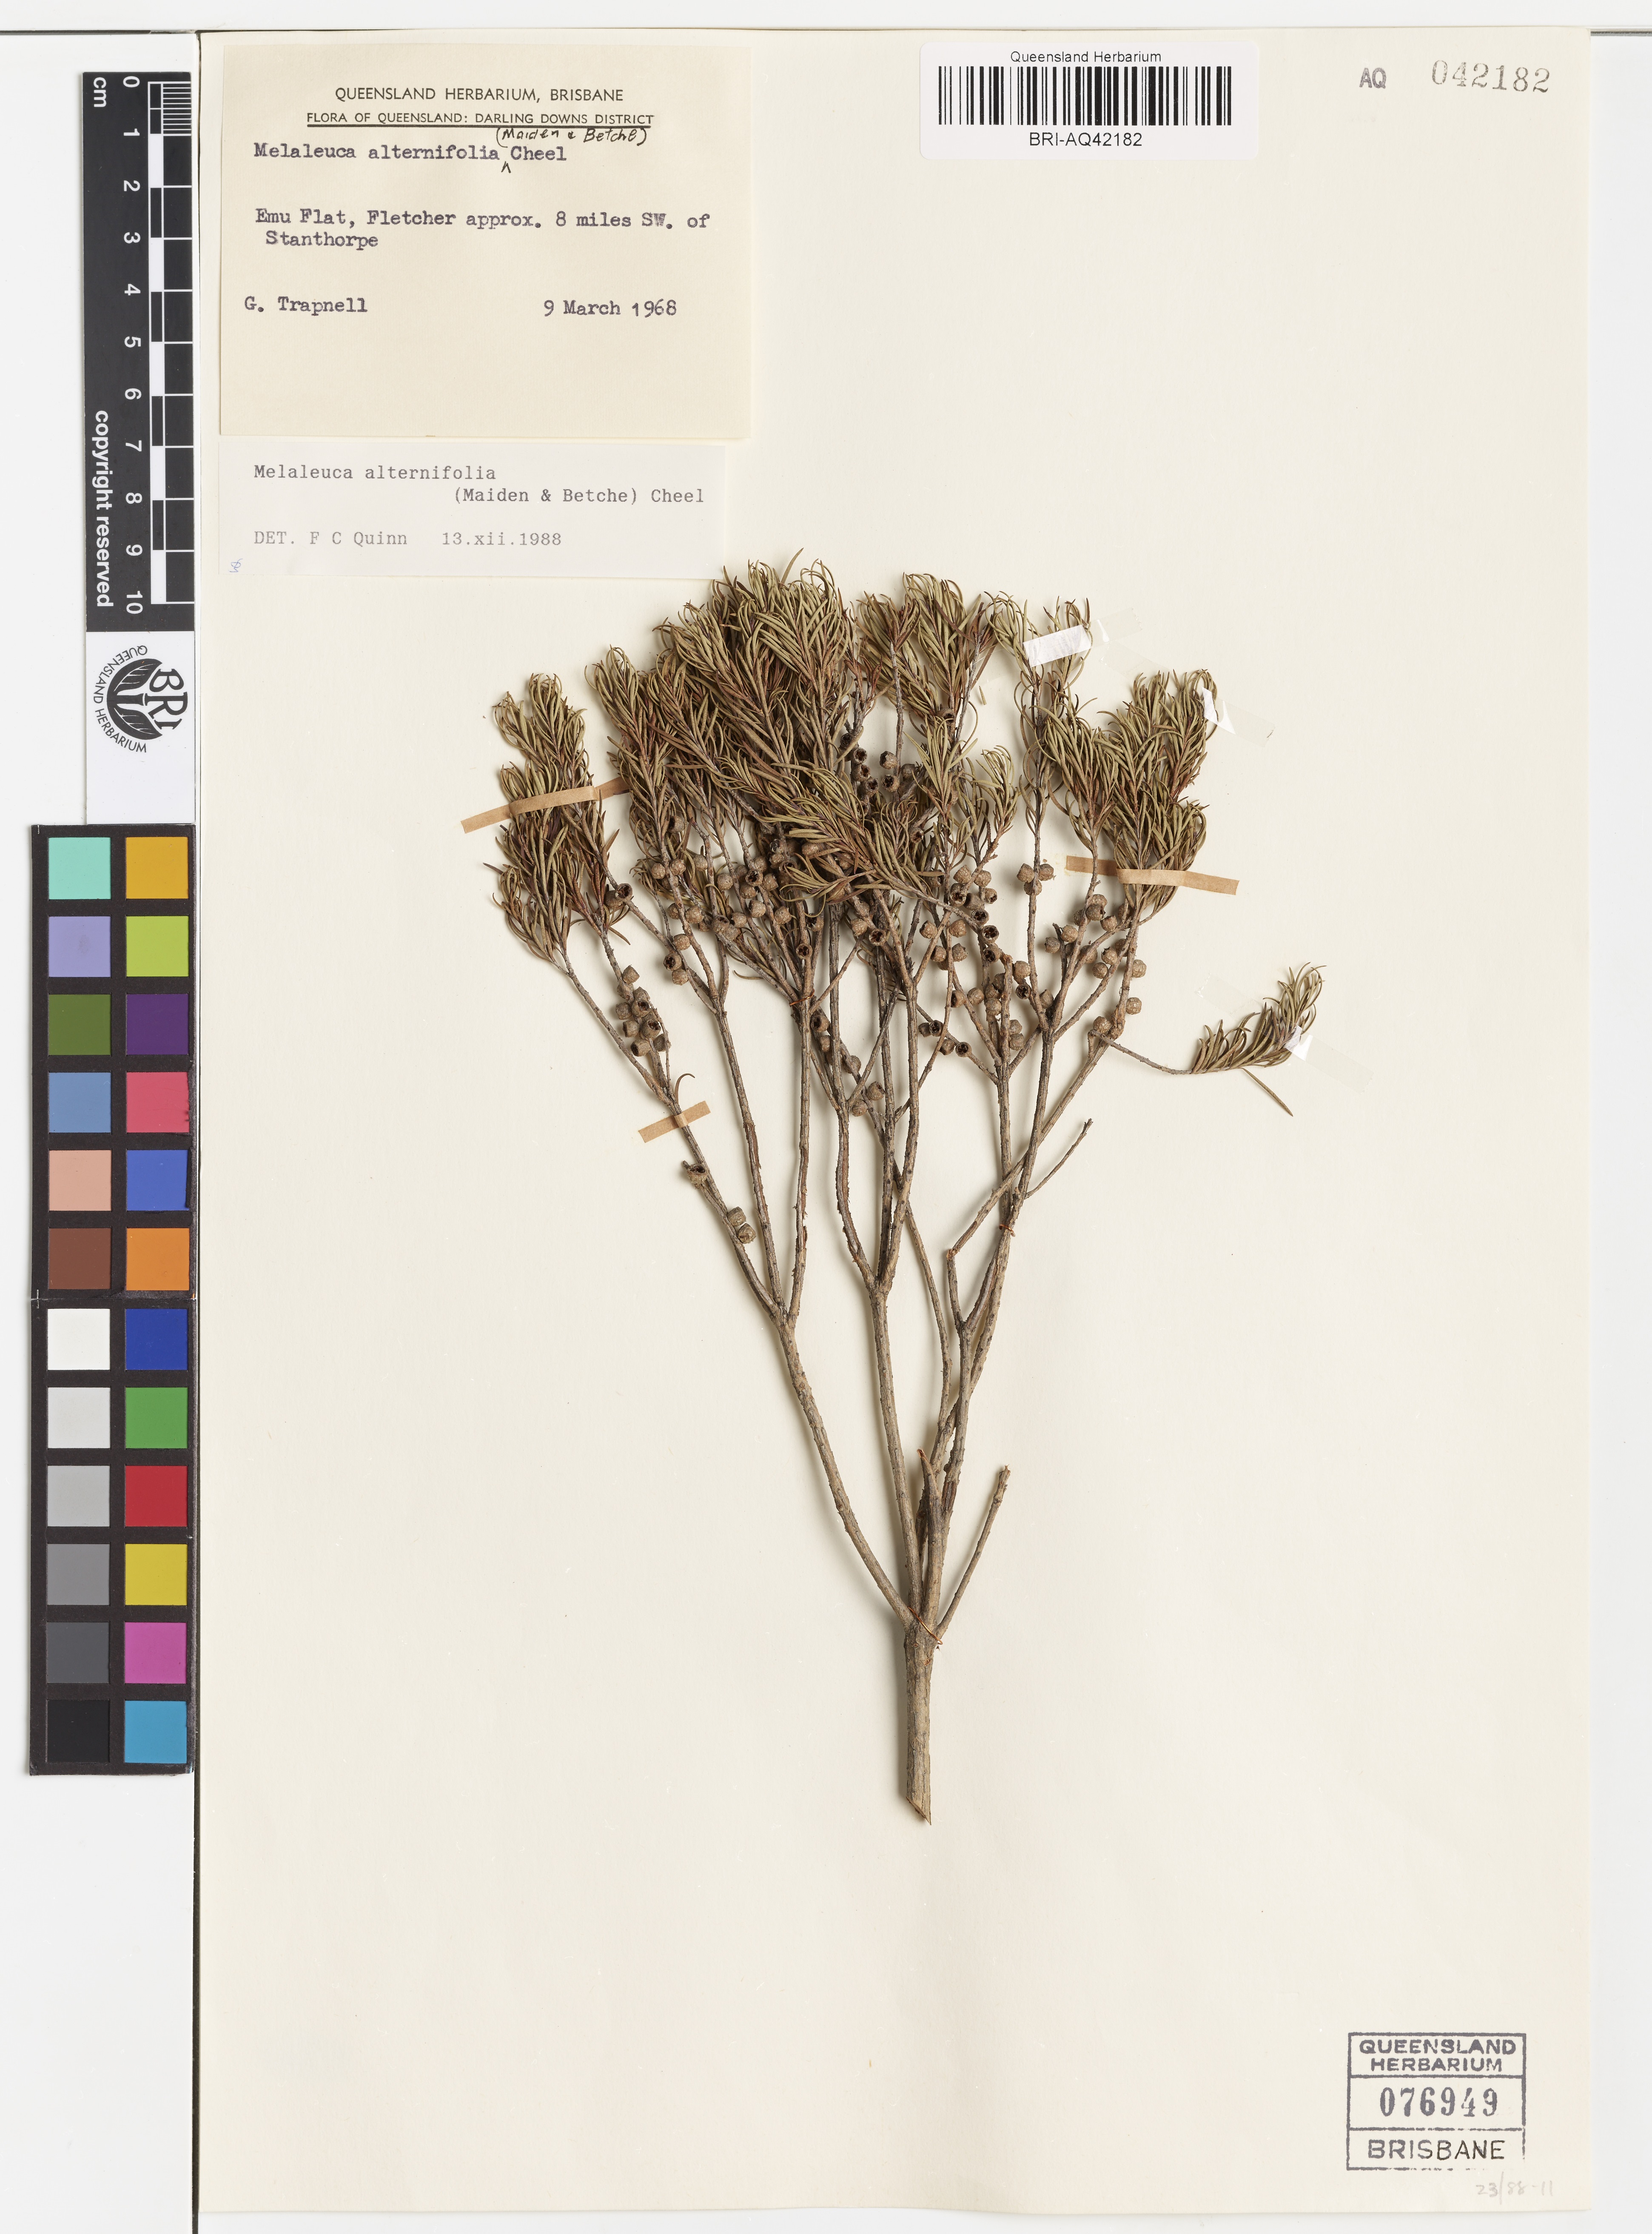 Dried and pressed herbarium specimen of Melaleuca alternifolia